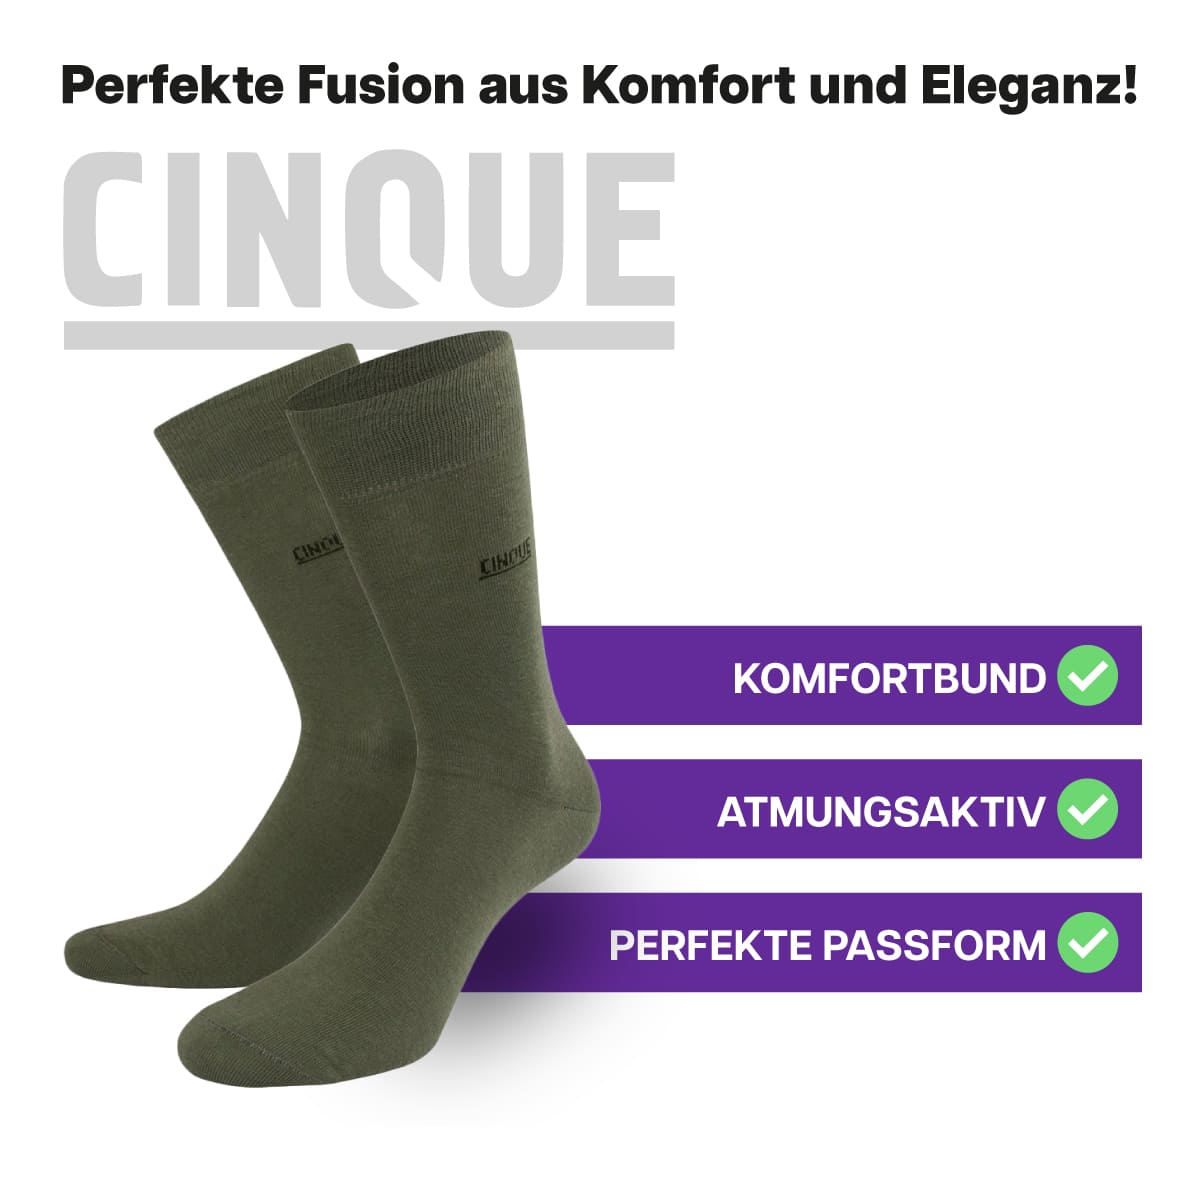 Erstklassige, atmungsaktive Business Socken von CINQUE designed by PATRON SOCKS mit Komfortbund. Perfekte Passform!